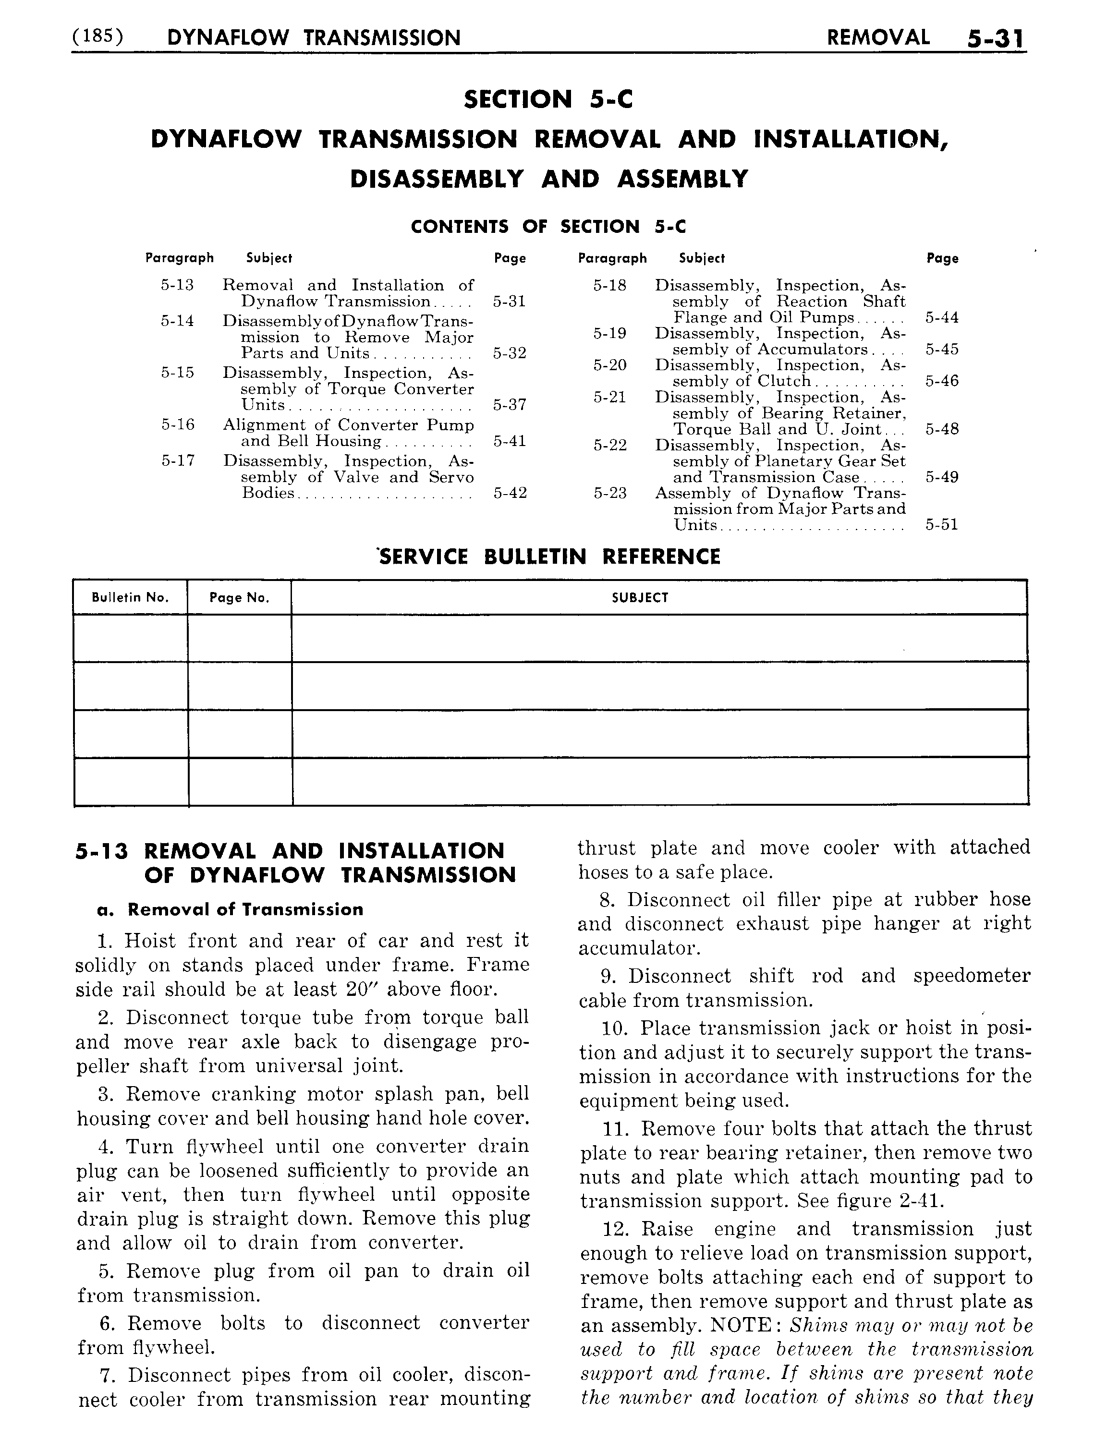 n_06 1954 Buick Shop Manual - Dynaflow-031-031.jpg